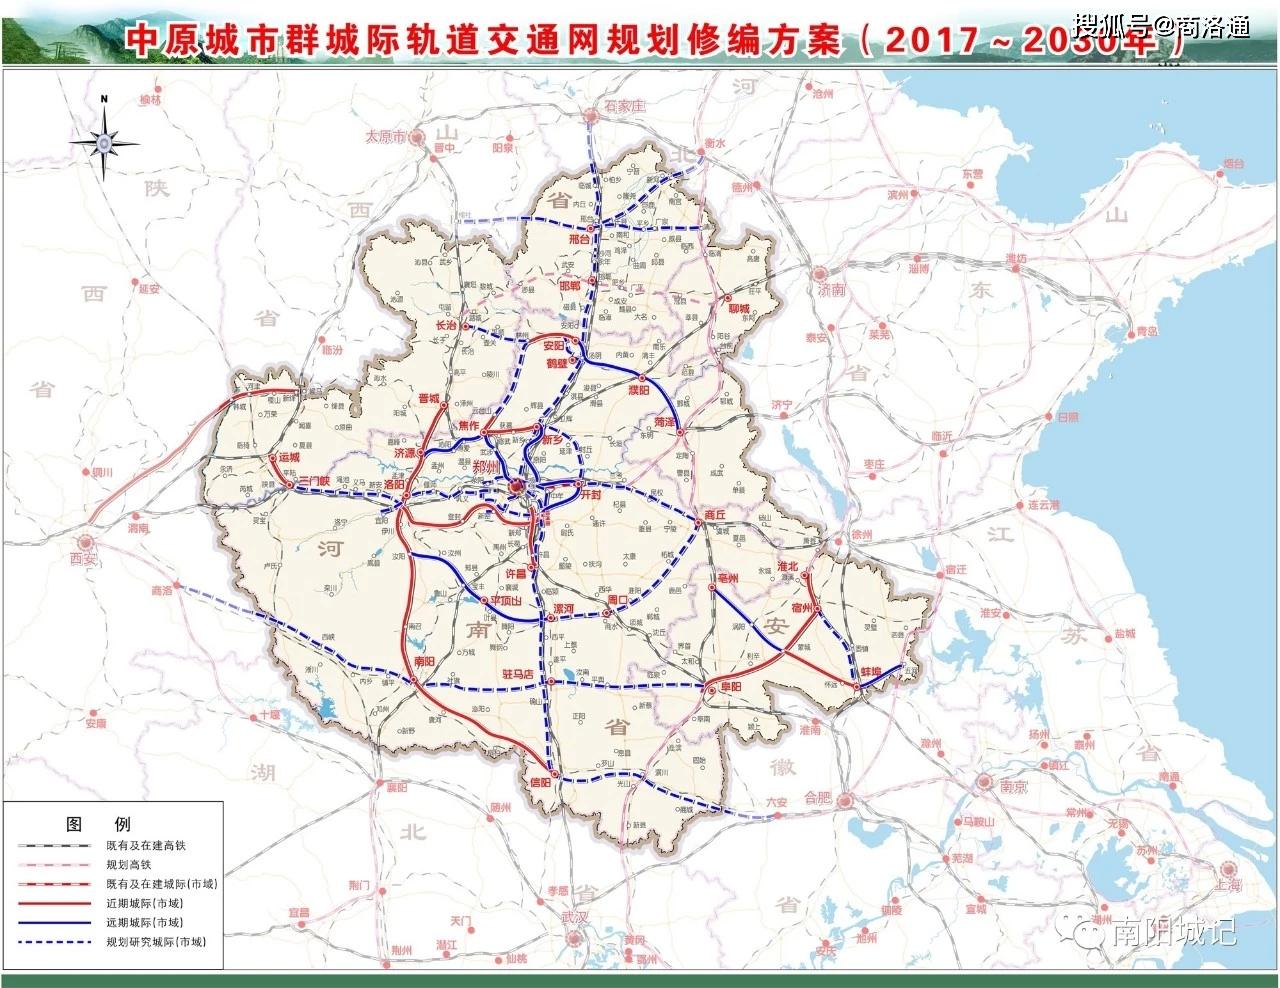 原创2020年陕西省应提出建设宁西高铁,并建设西安至丹凤商南城际铁路